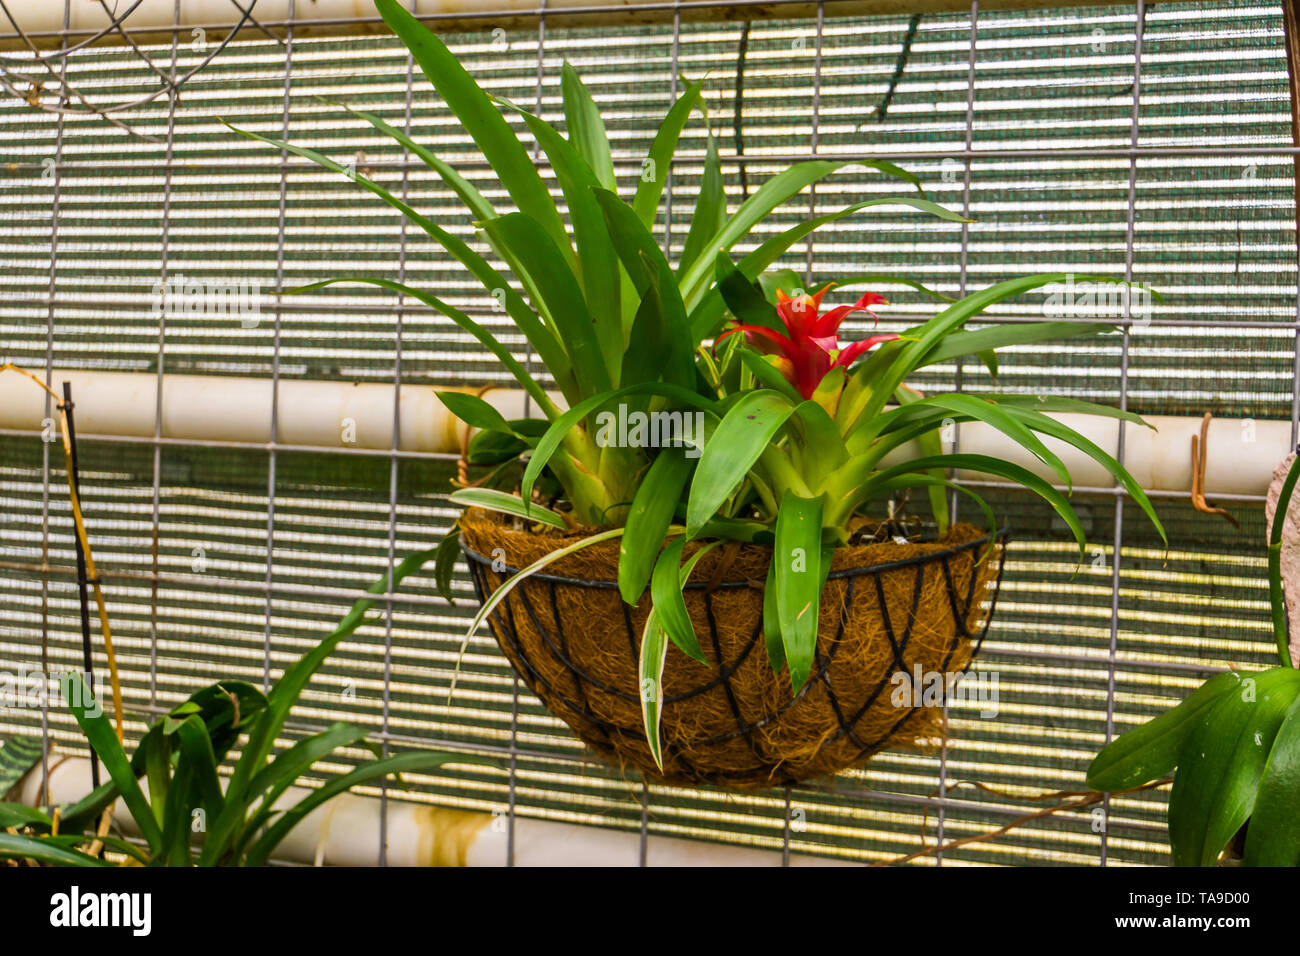 Red tufted impianto di aria in un cesto fiorito, popolare tropicale impianto decorativo dall America Foto Stock